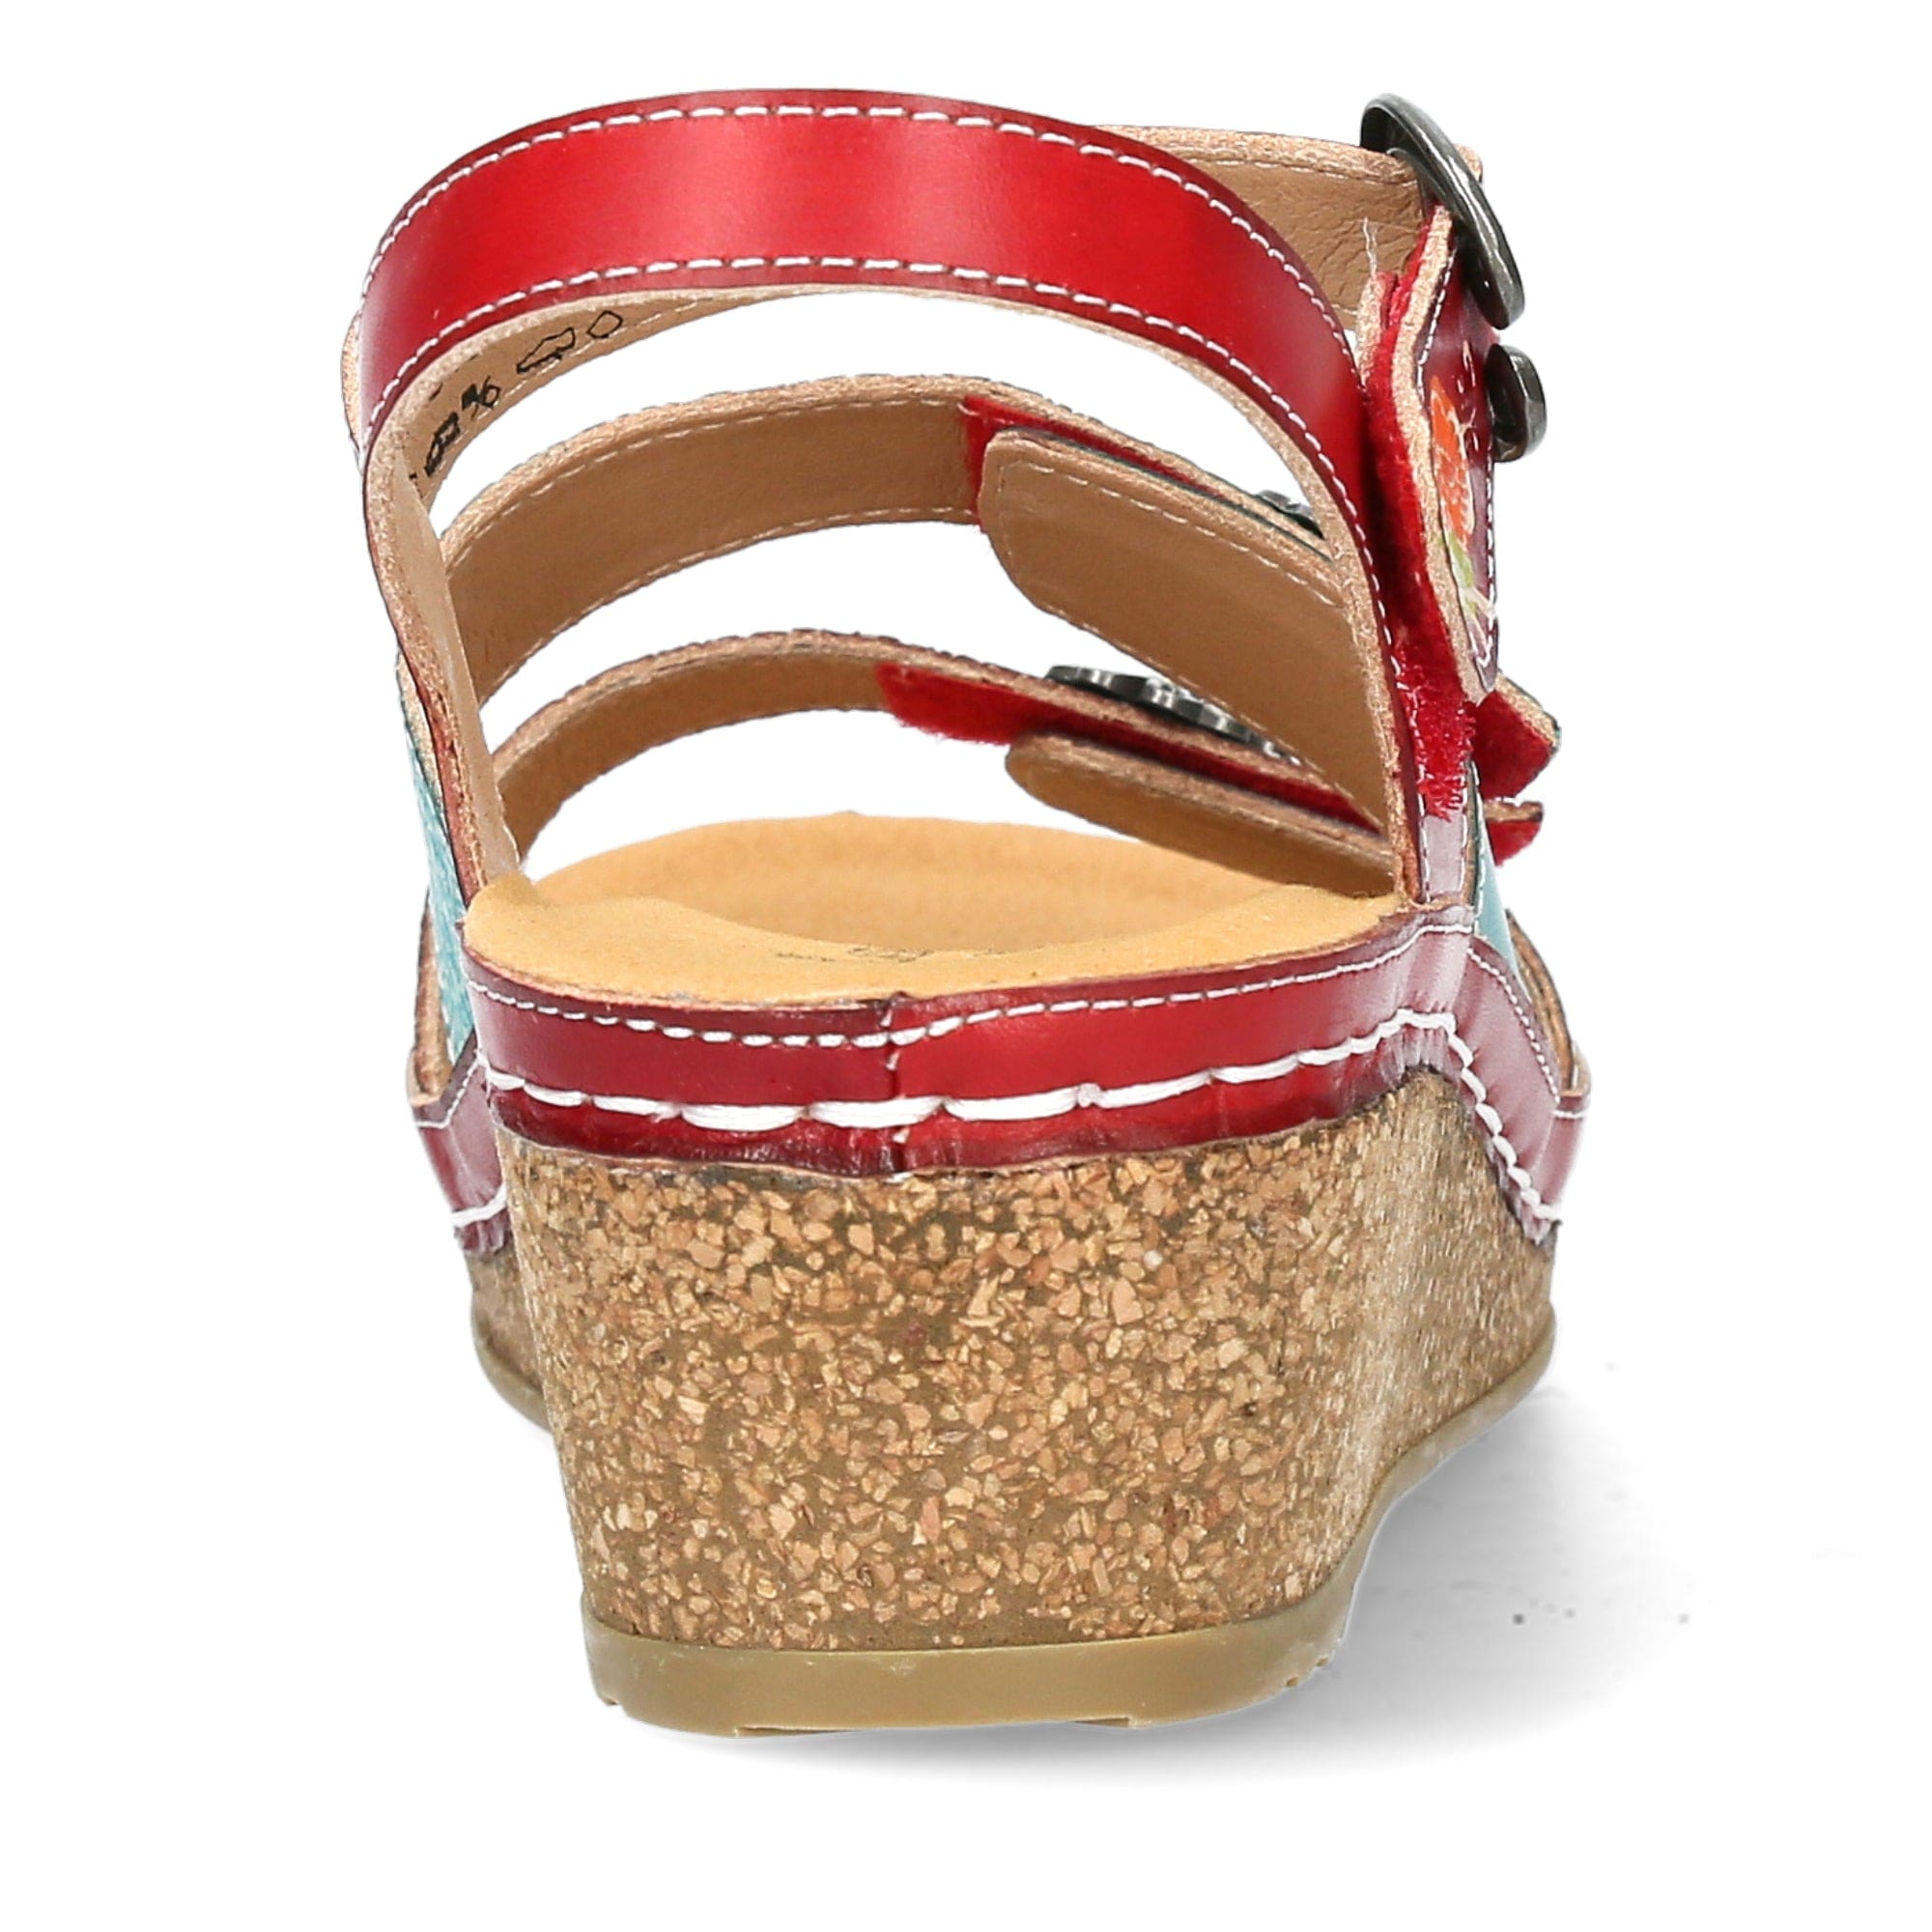 FACSCINEO 13 Shoes - Sandal